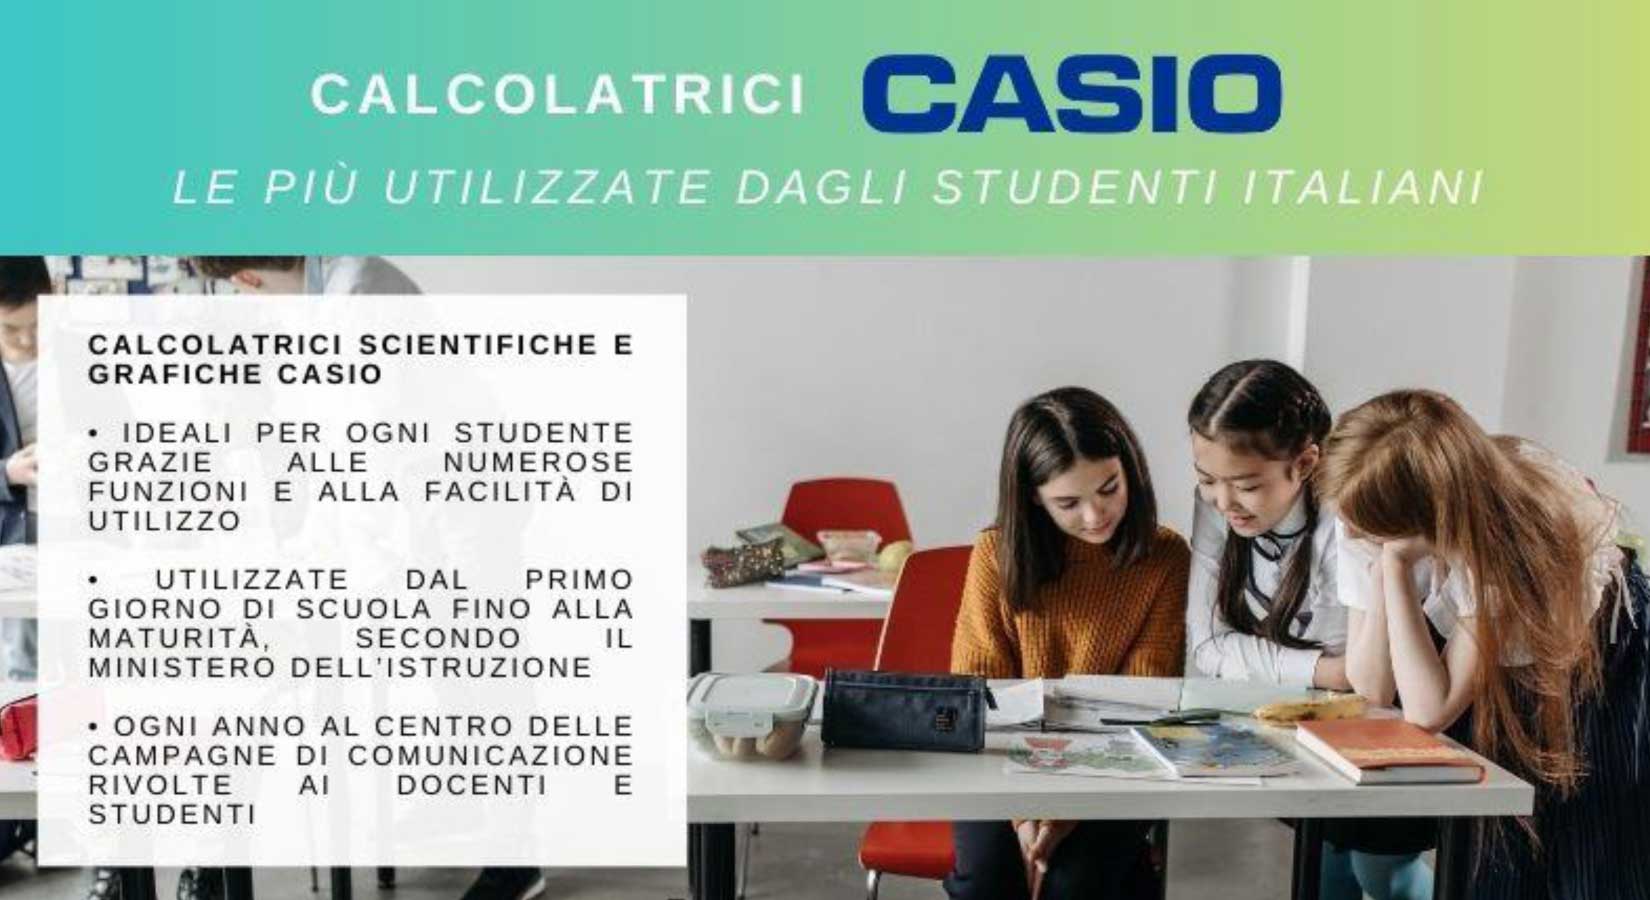 Calcolatrici Casio: le più utilizzate dagli studenti